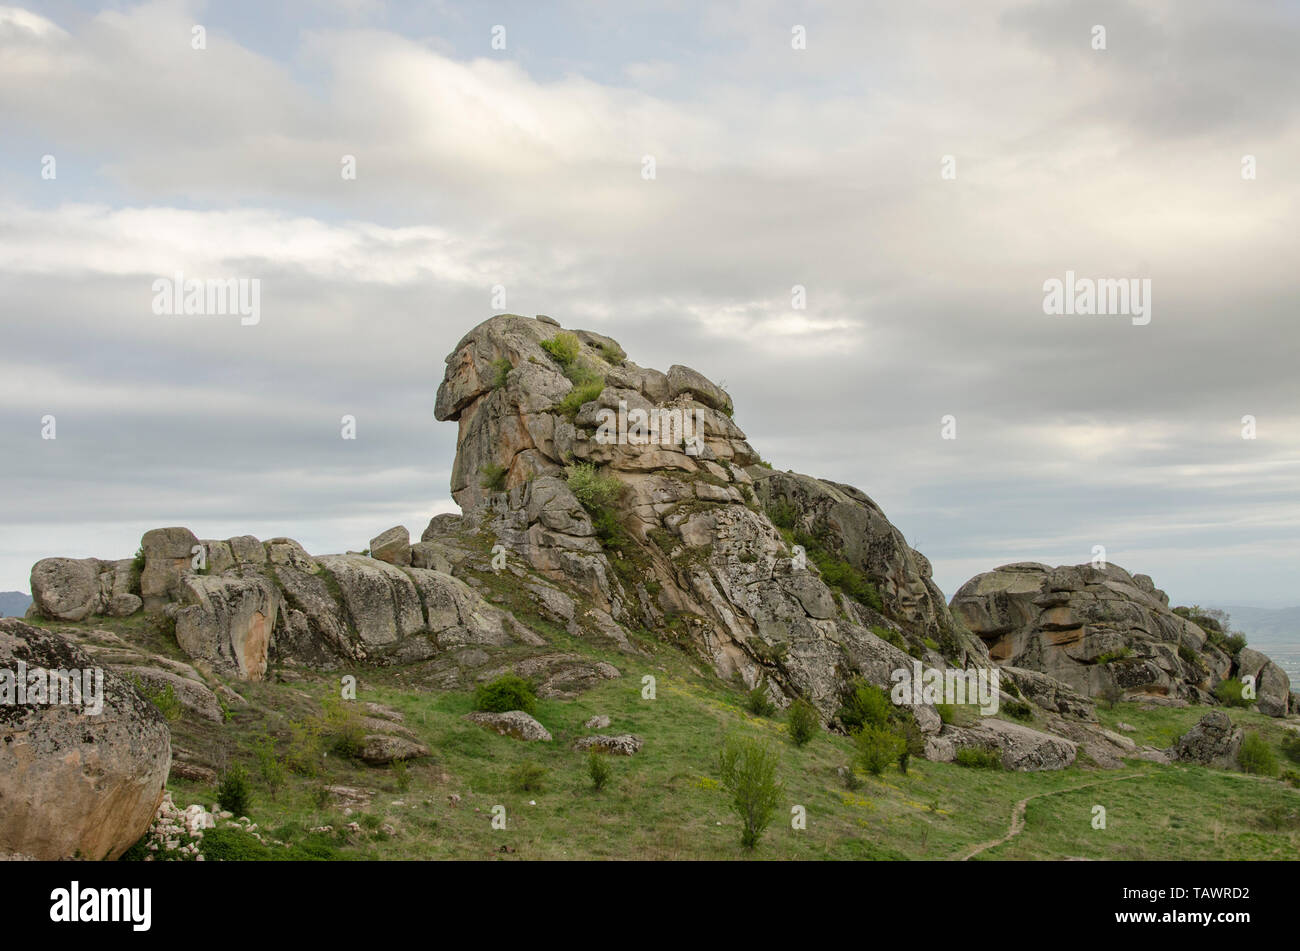 Lion Rock - treskavec Kloster in der Nähe von Prilep, Mazedonien Stockfoto